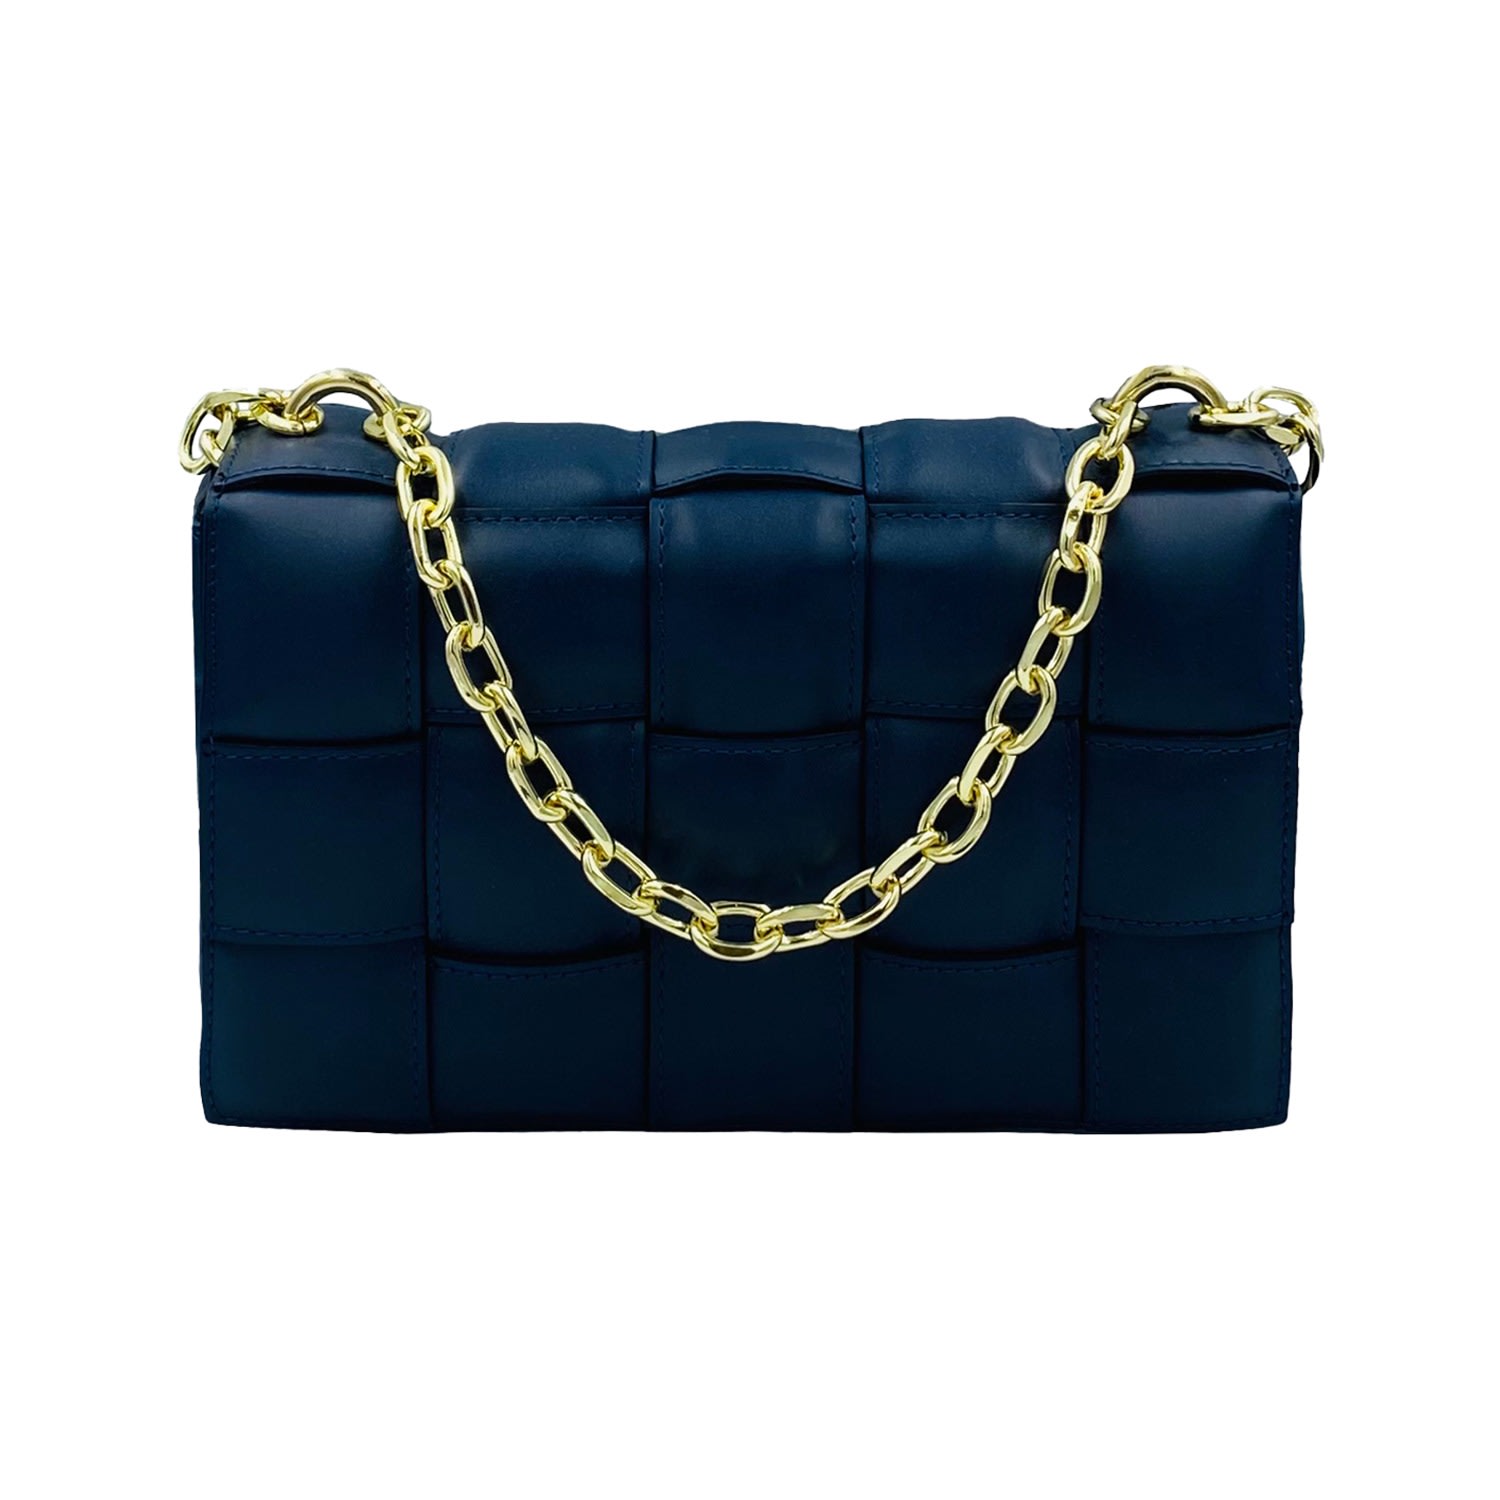 Women’s Braided Leather Handbag Navy Blue One Size Angelika Jozefczyk